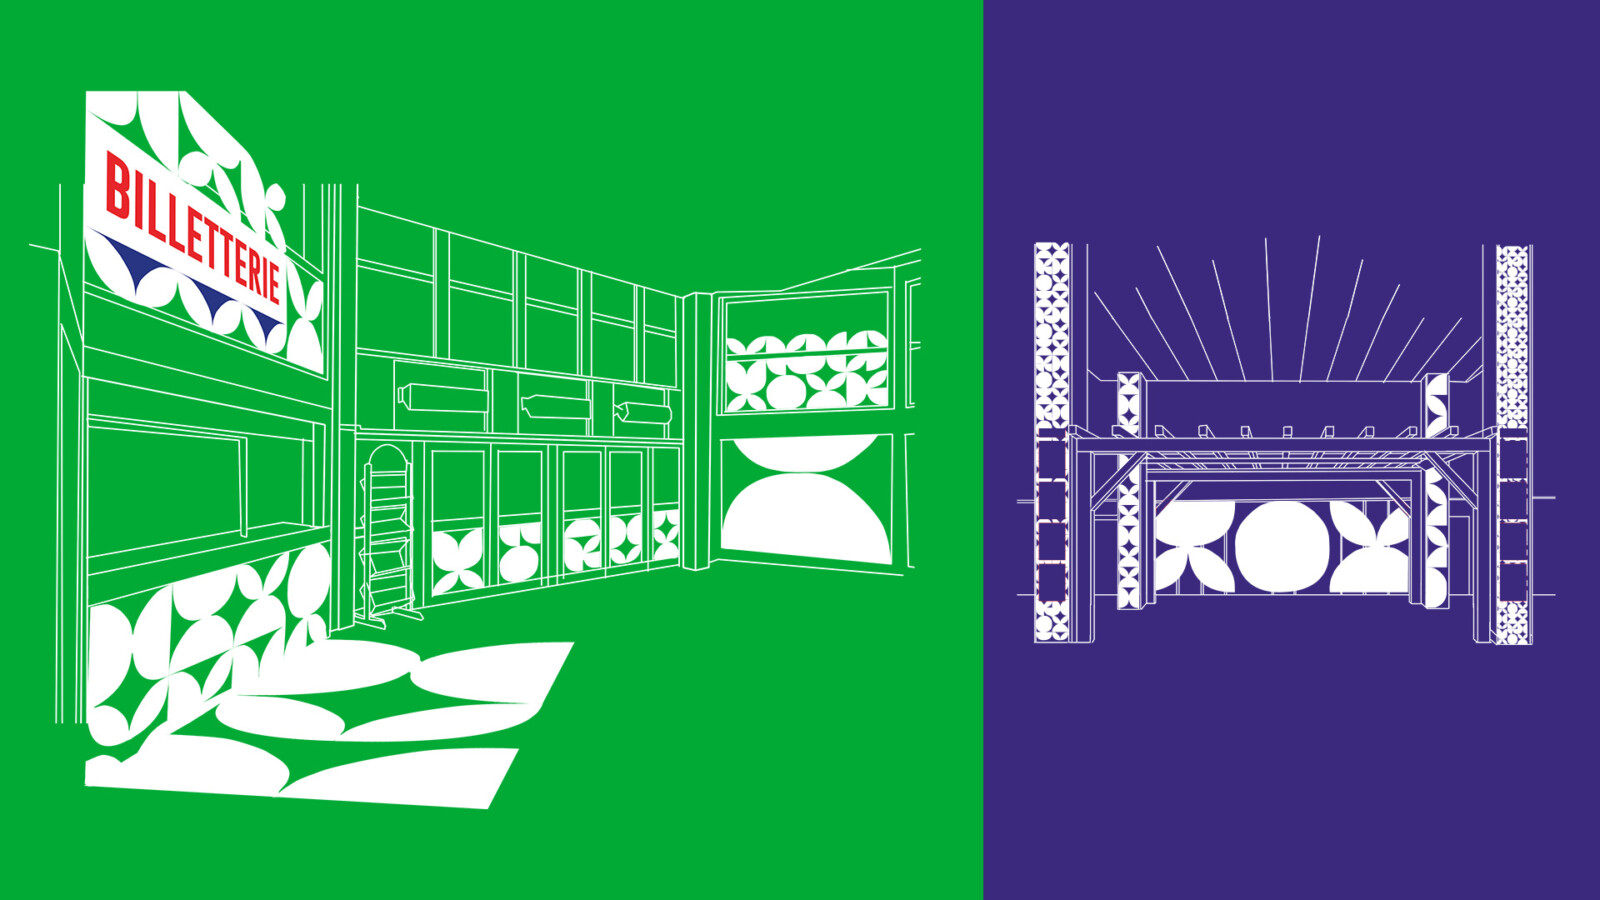 Illustrations représentant la billetterie et la pergola du Théâtre Chevilly-Larue, la première sur fond vert, la seconde sur fond violet. La signalétique au motif emblématique figure en blanc.